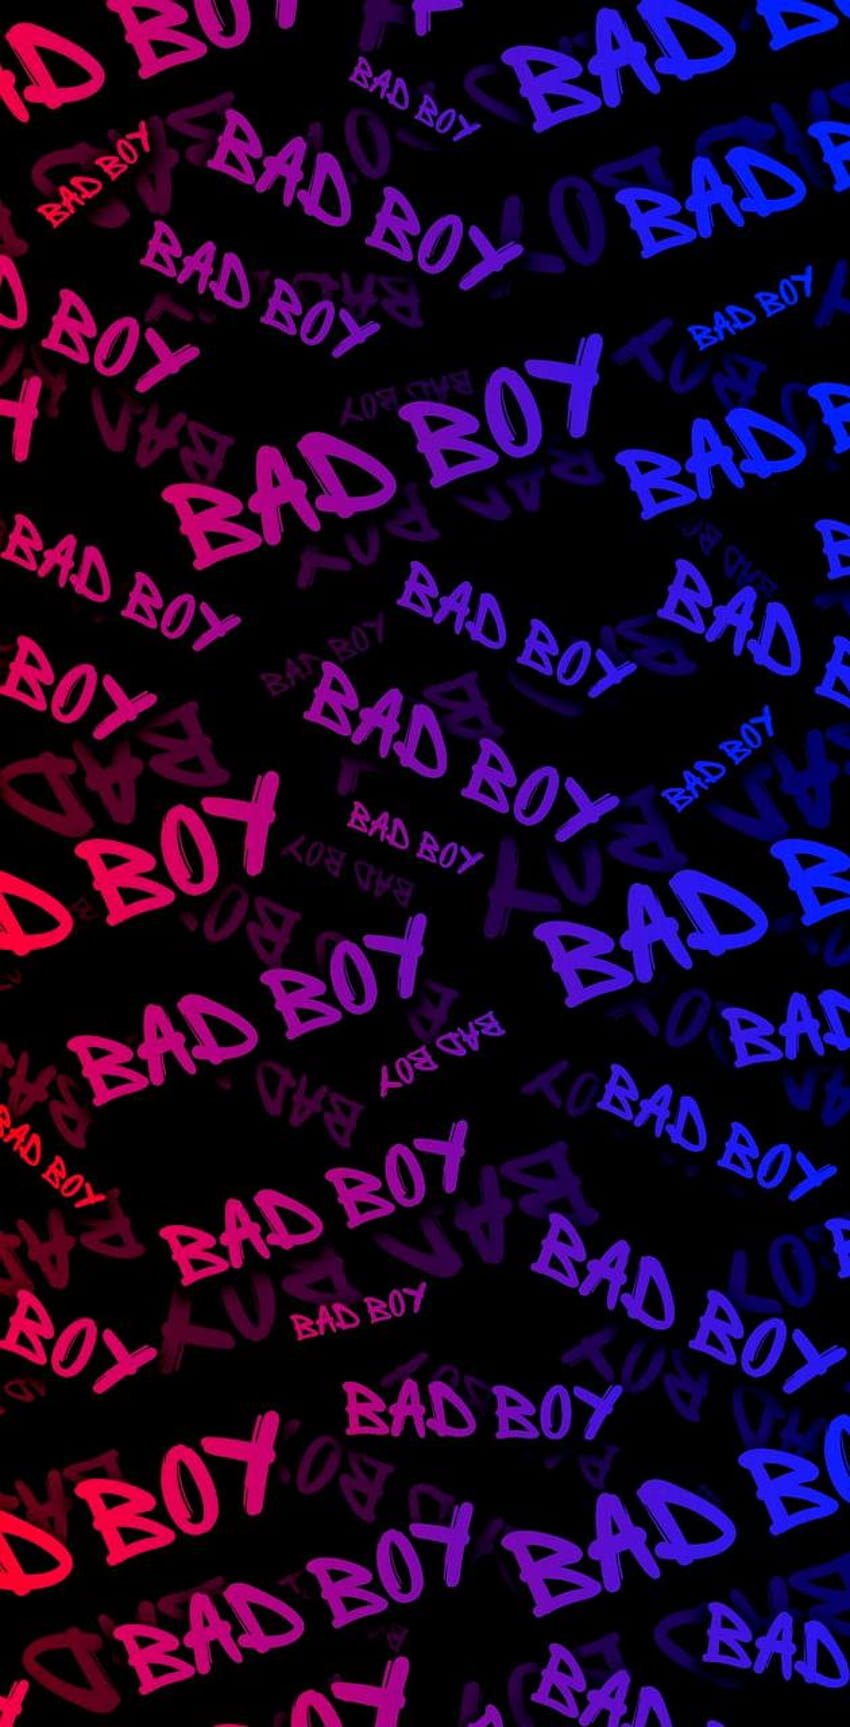 Bad boy by georgekev, baddie boy HD phone wallpaper | Pxfuel